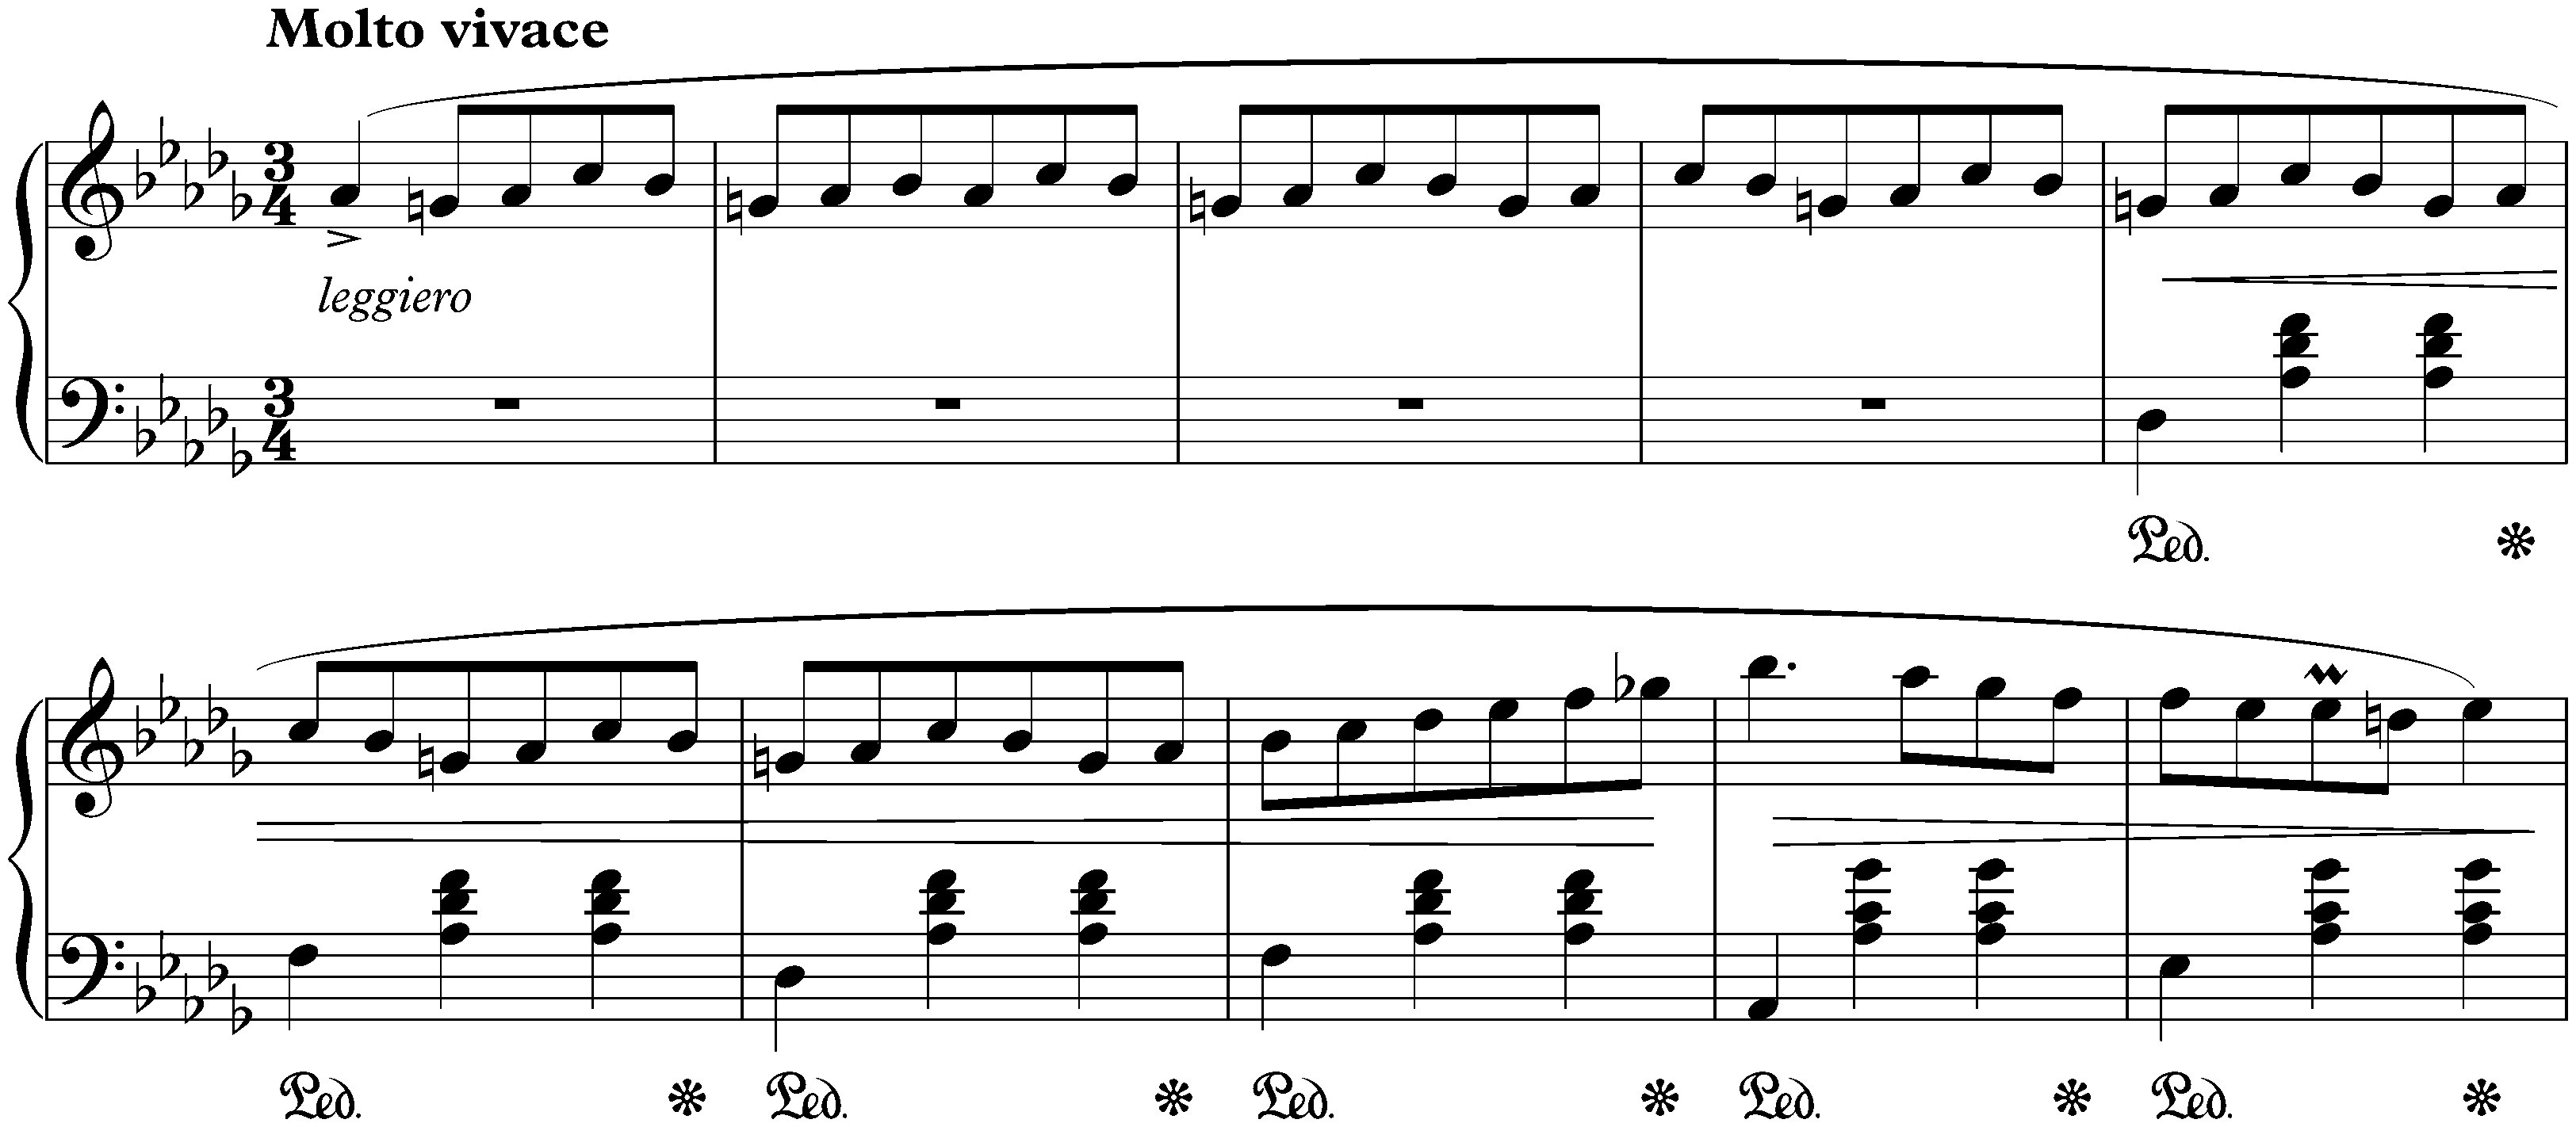 Three Valses, op. 64; 1. D-flat major